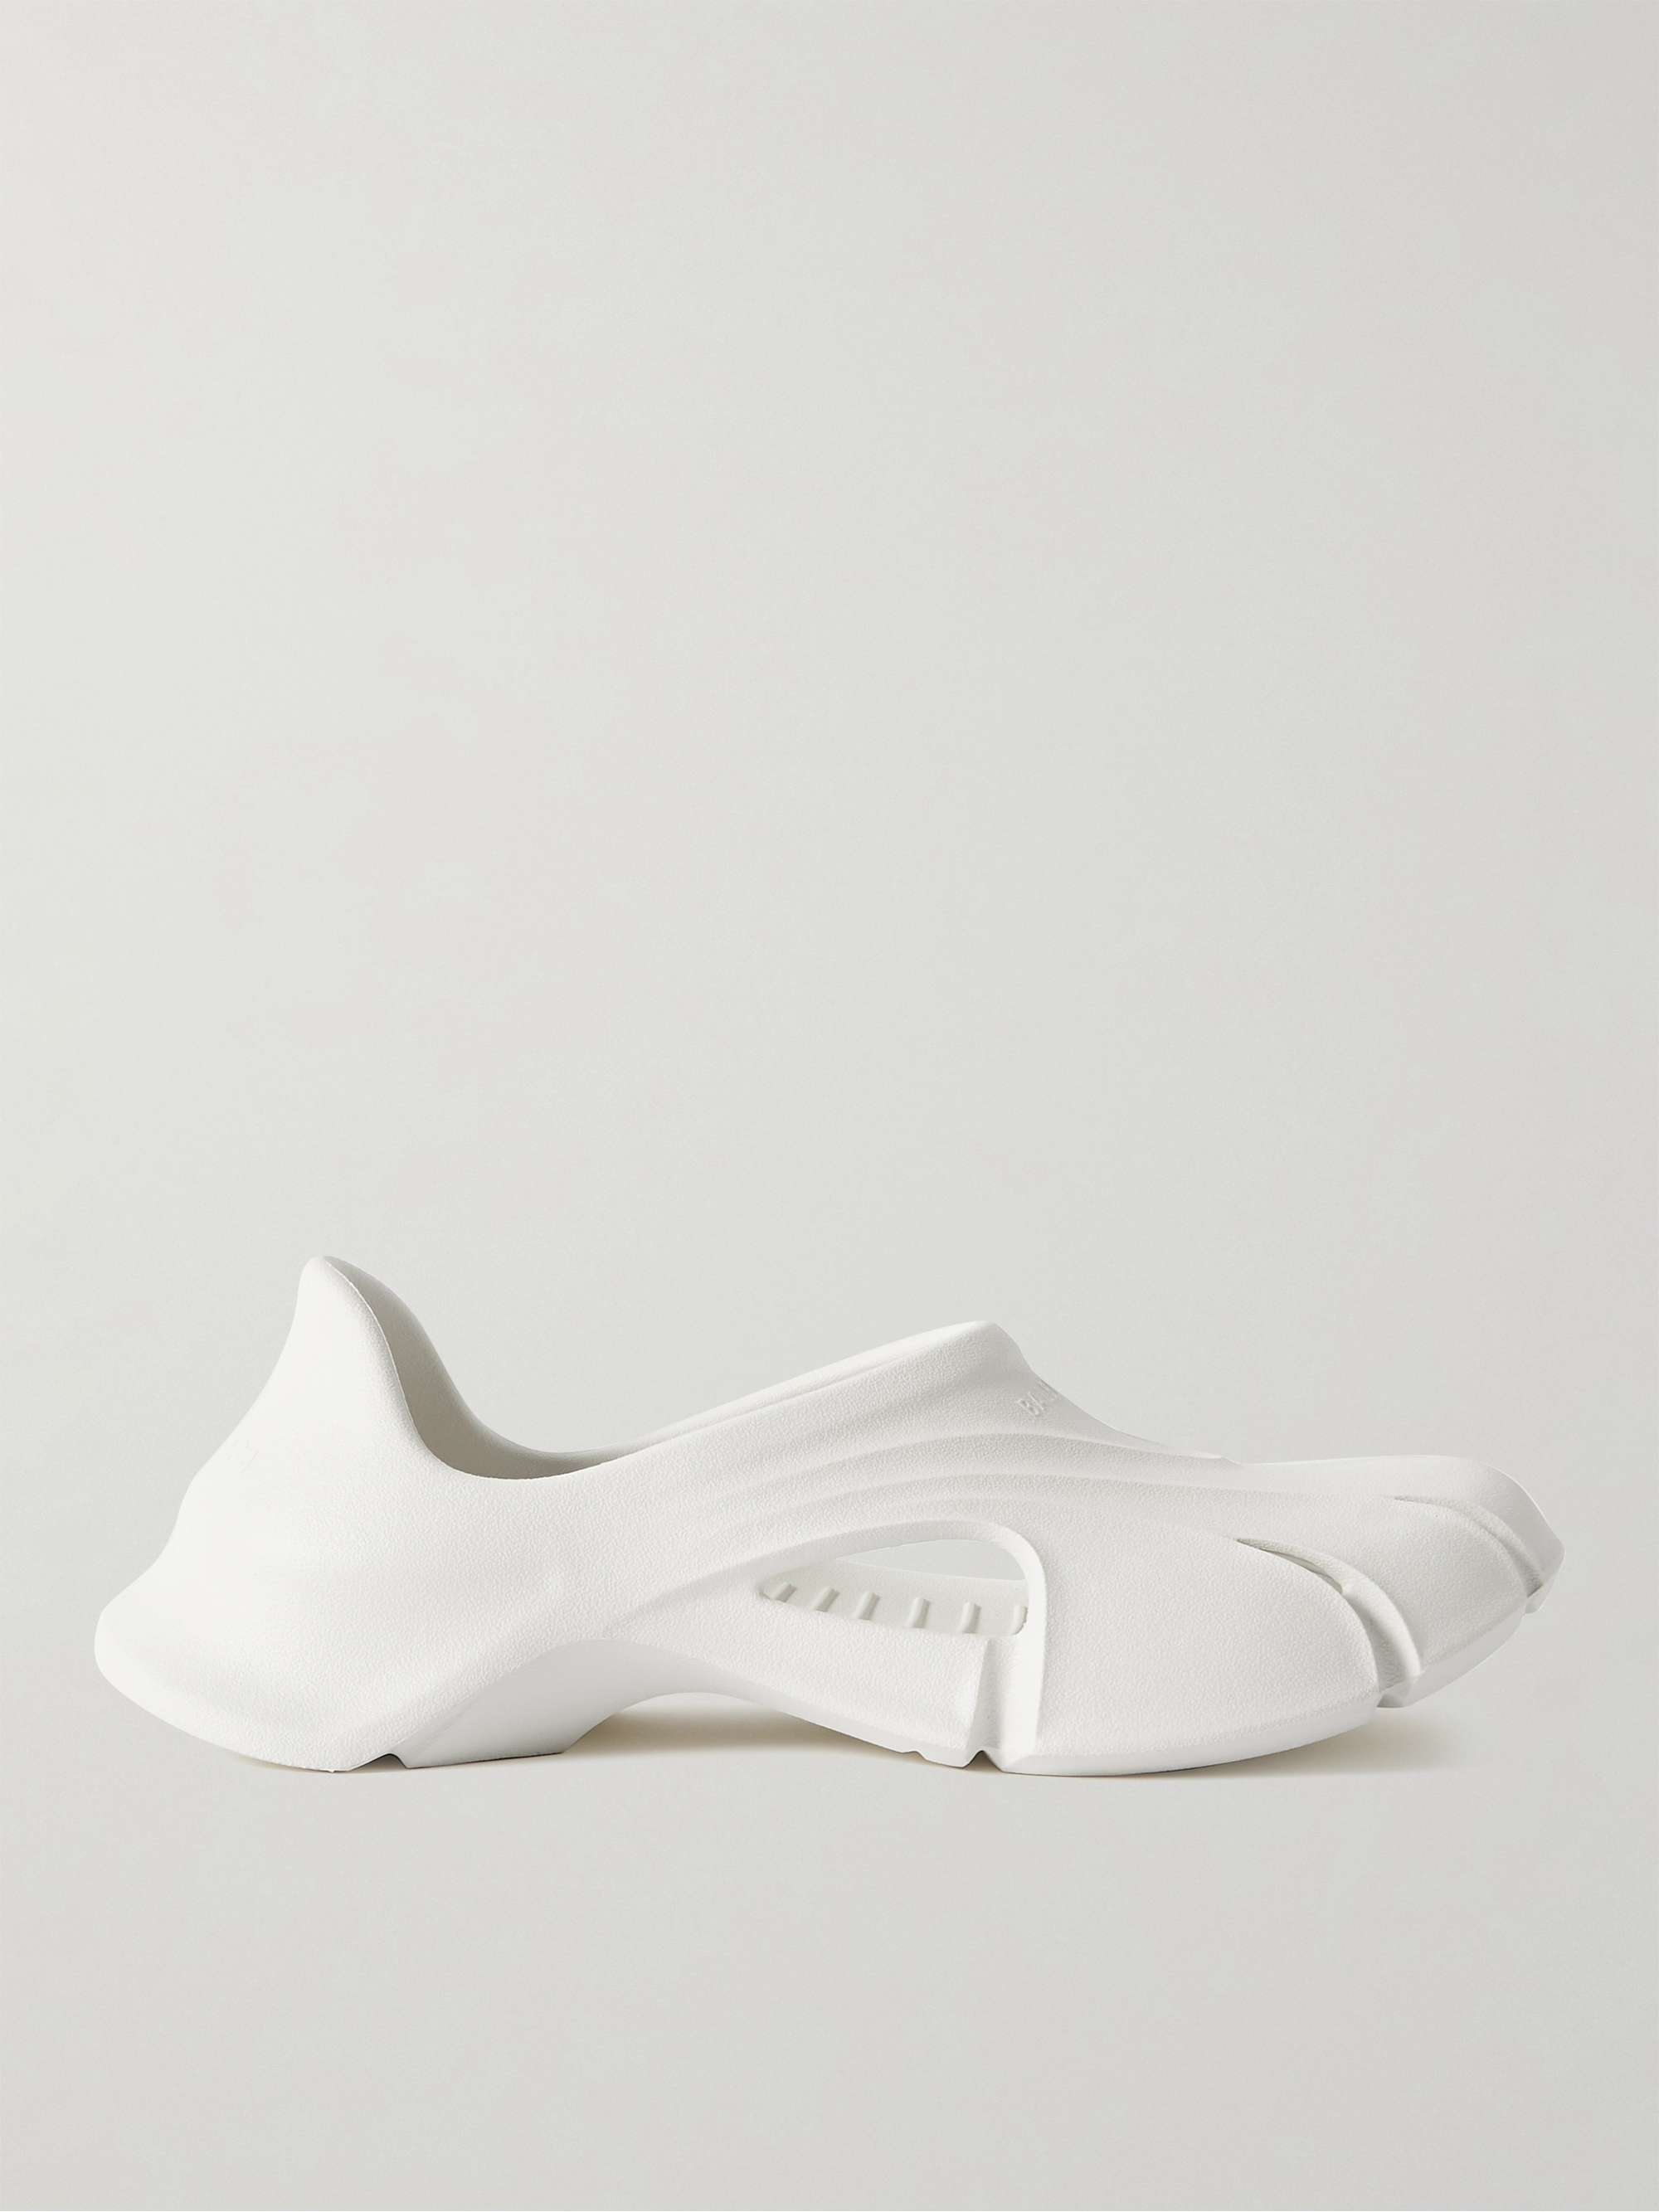 White Mold Closed Rubber Sandals | BALENCIAGA | MR PORTER